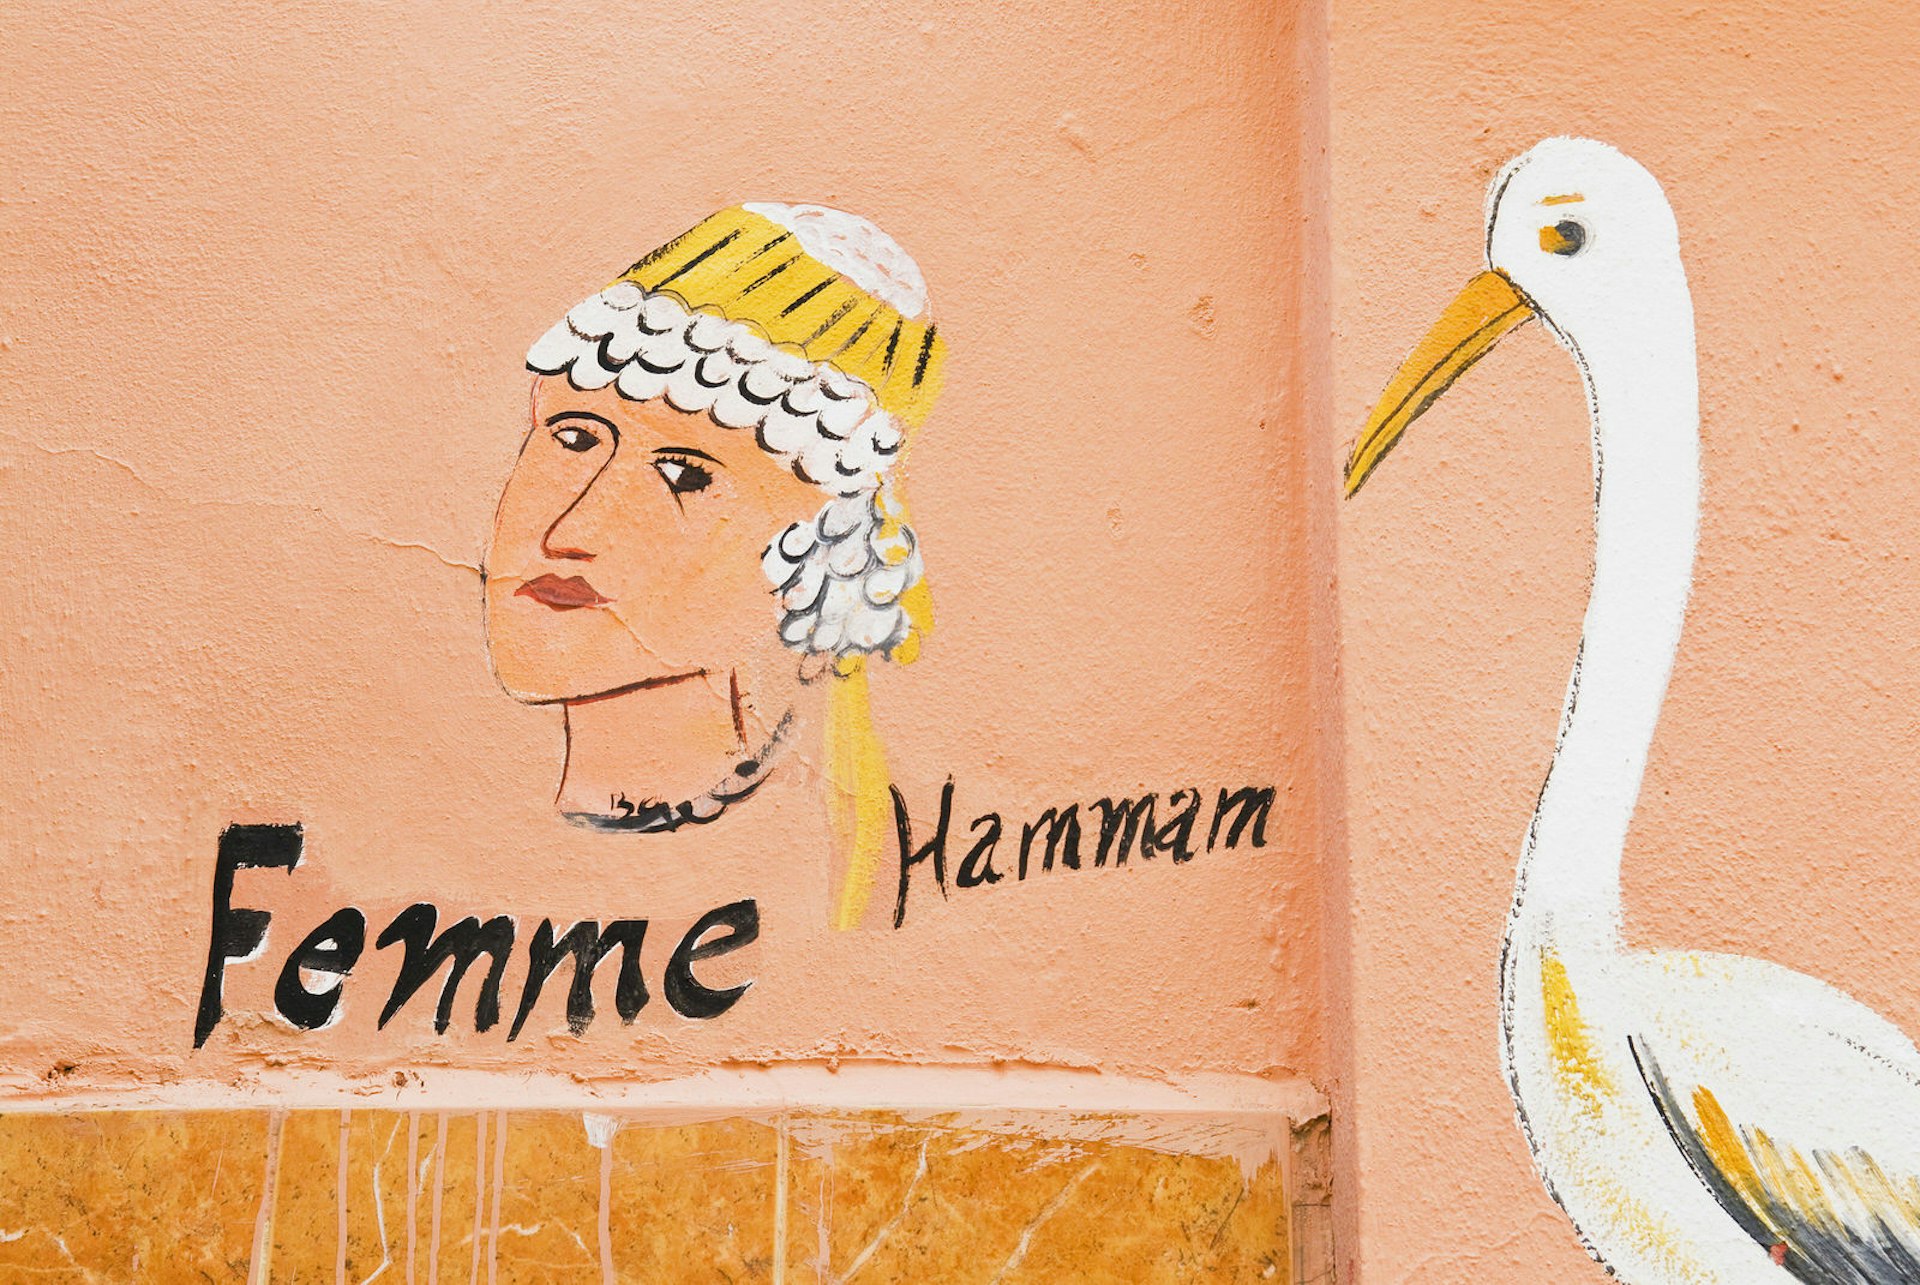 Sign for a neighbourhood hammam in Marrakesh, Morocco